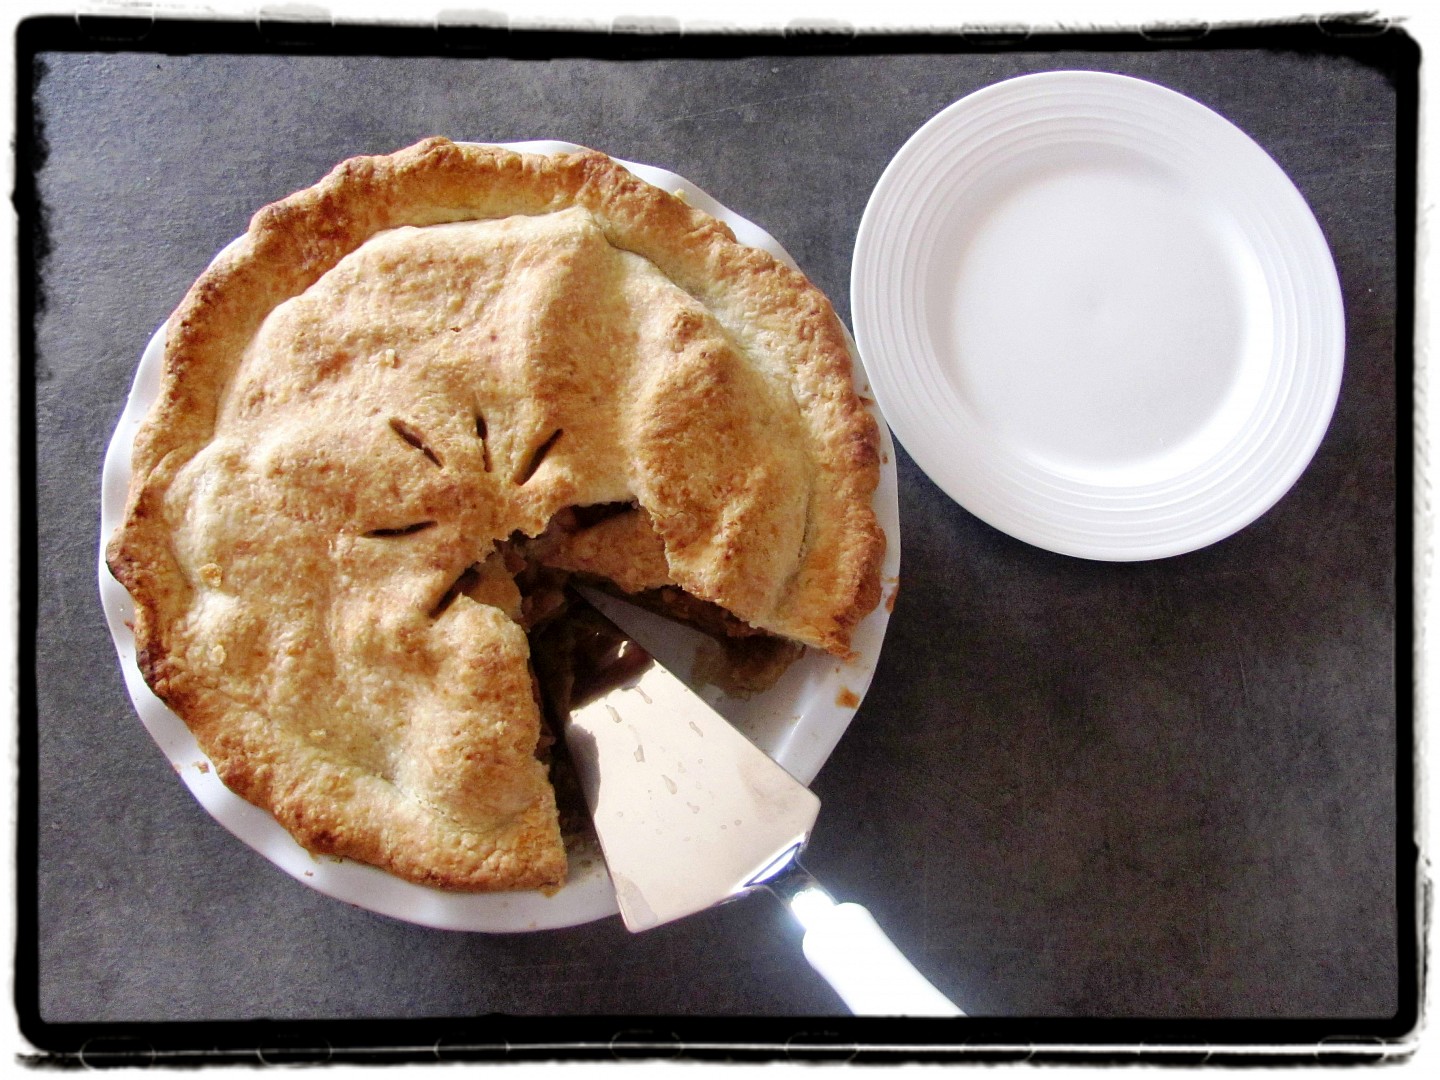 Jablečný koláč (Apple pie) - TopRecepty.cz